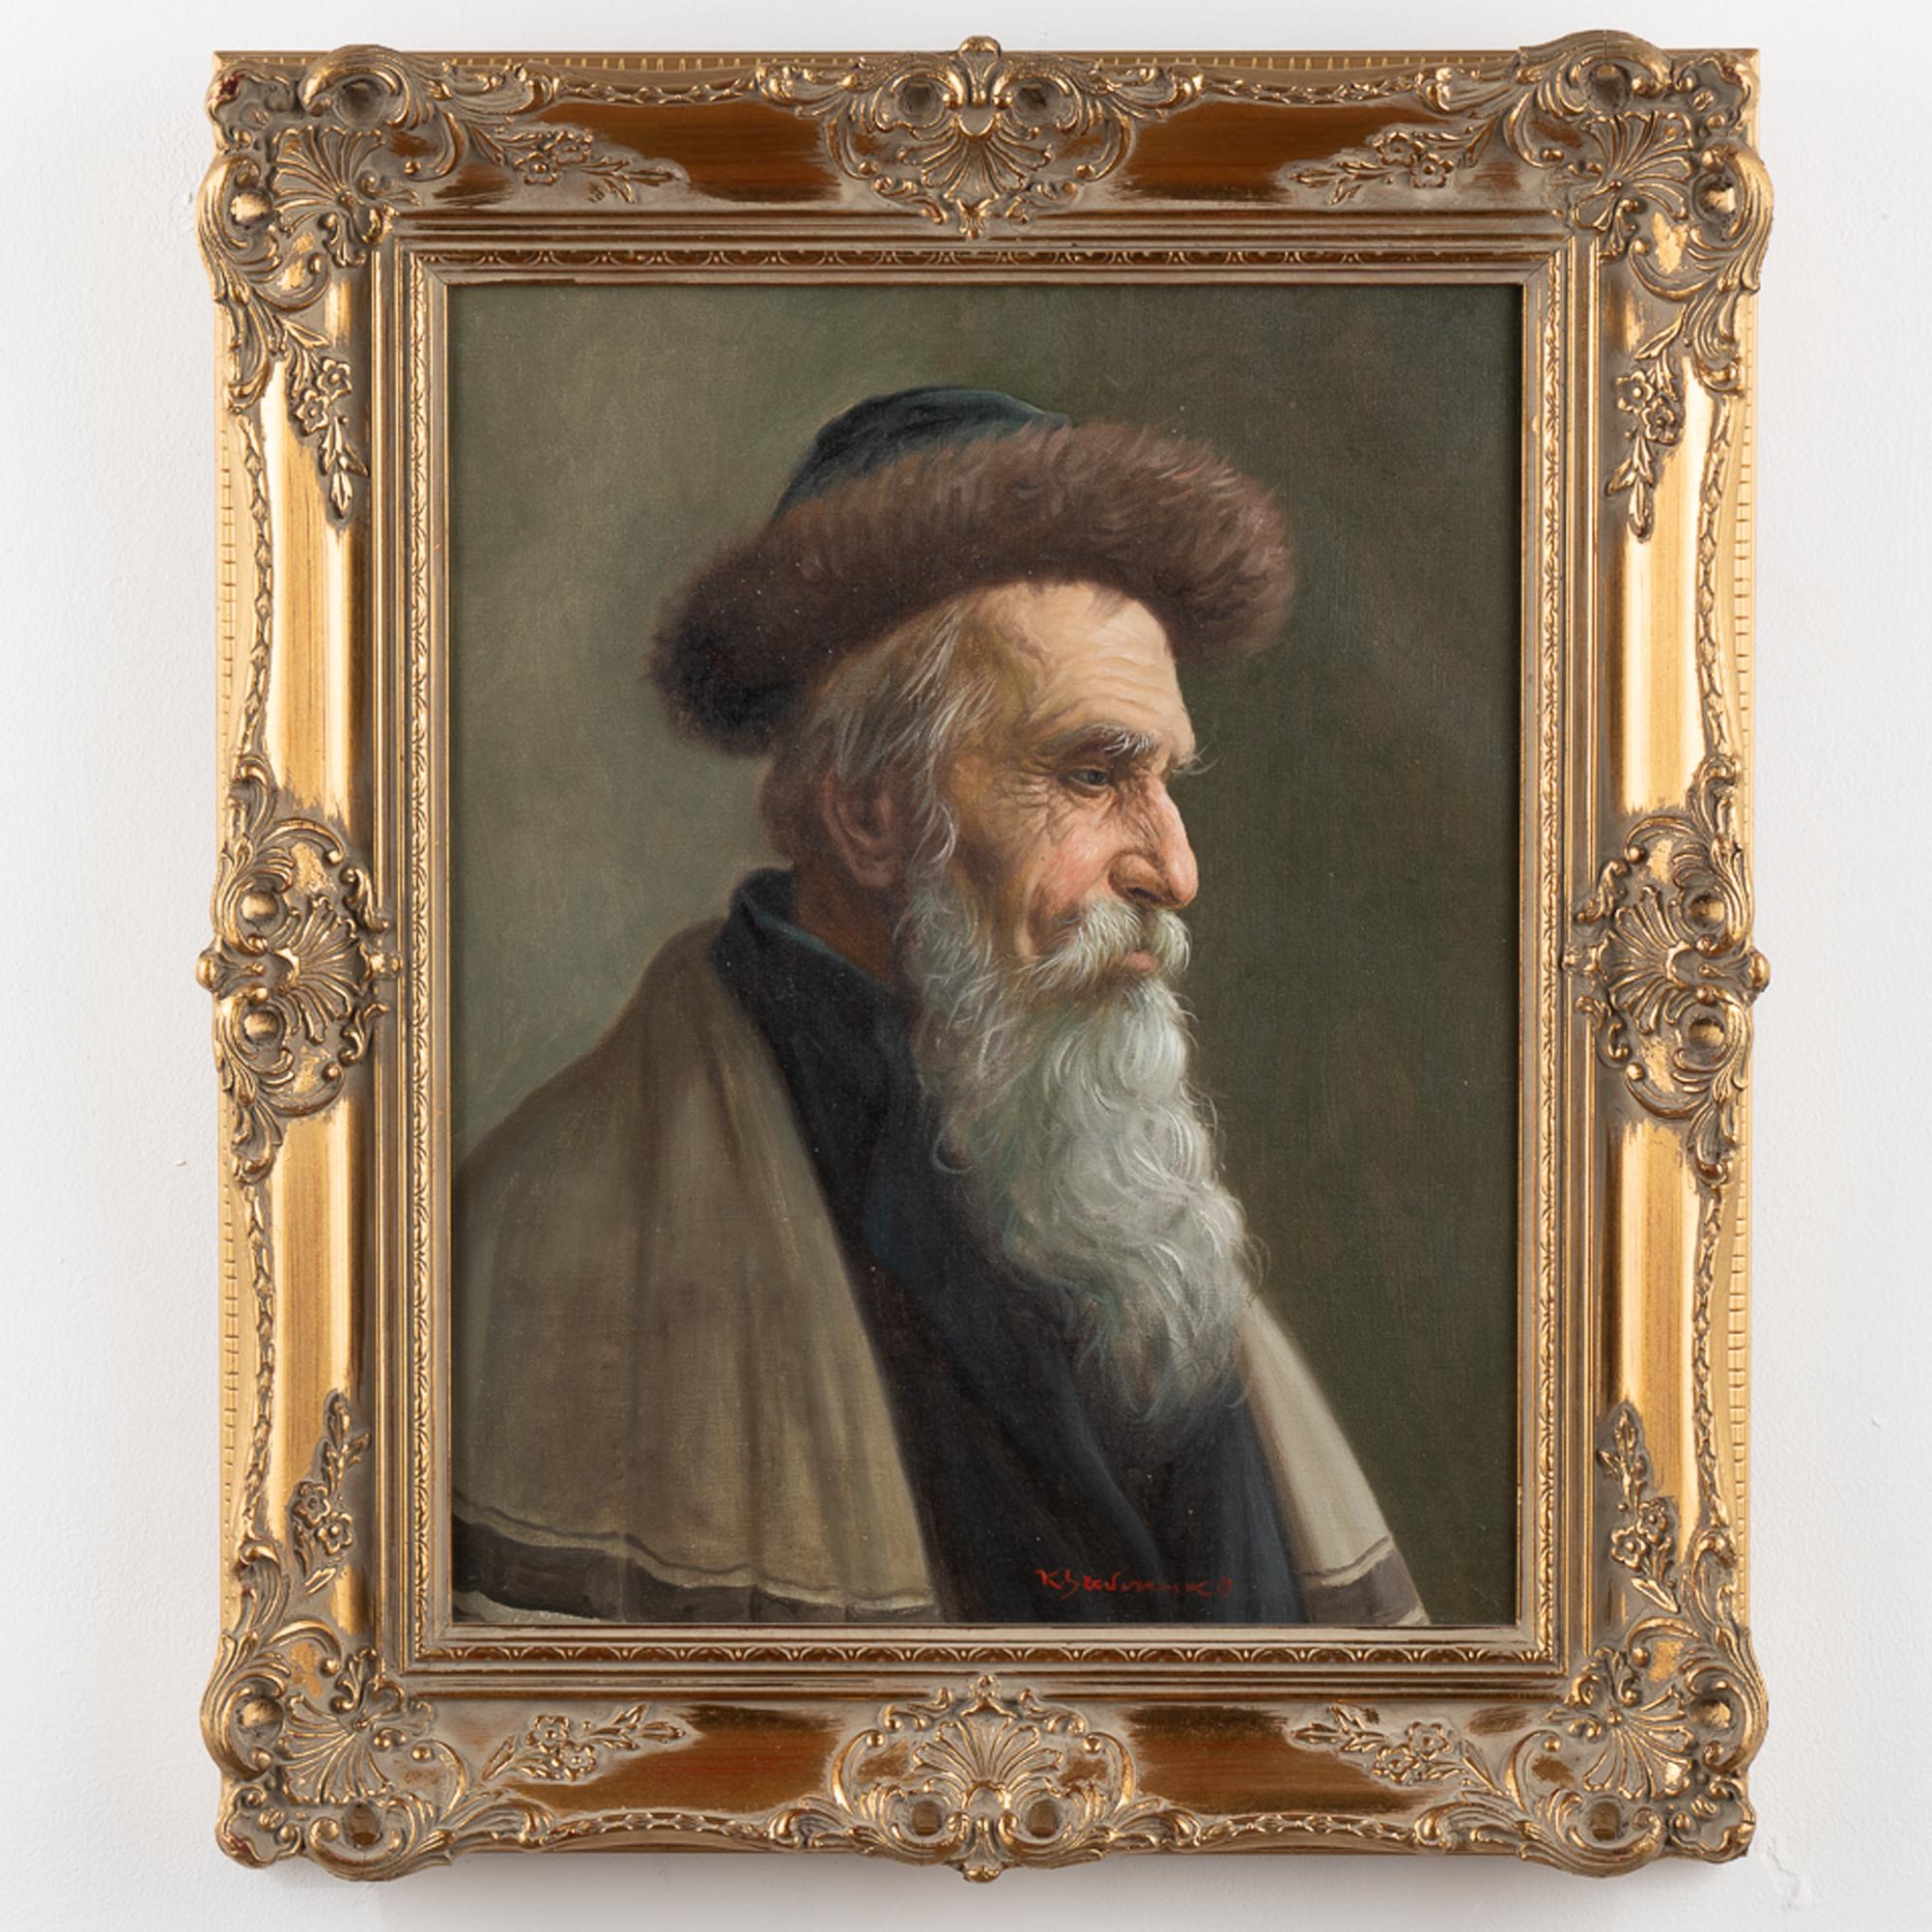 Portrait original à l'huile sur toile d'un homme russe portant un chapeau. Signé, artiste inconnu.
La toile est en bon état, décollements mineurs, craquelures, peut bénéficier d'un léger nettoyage. 
Toutes les rayures, fissures, bosses ou